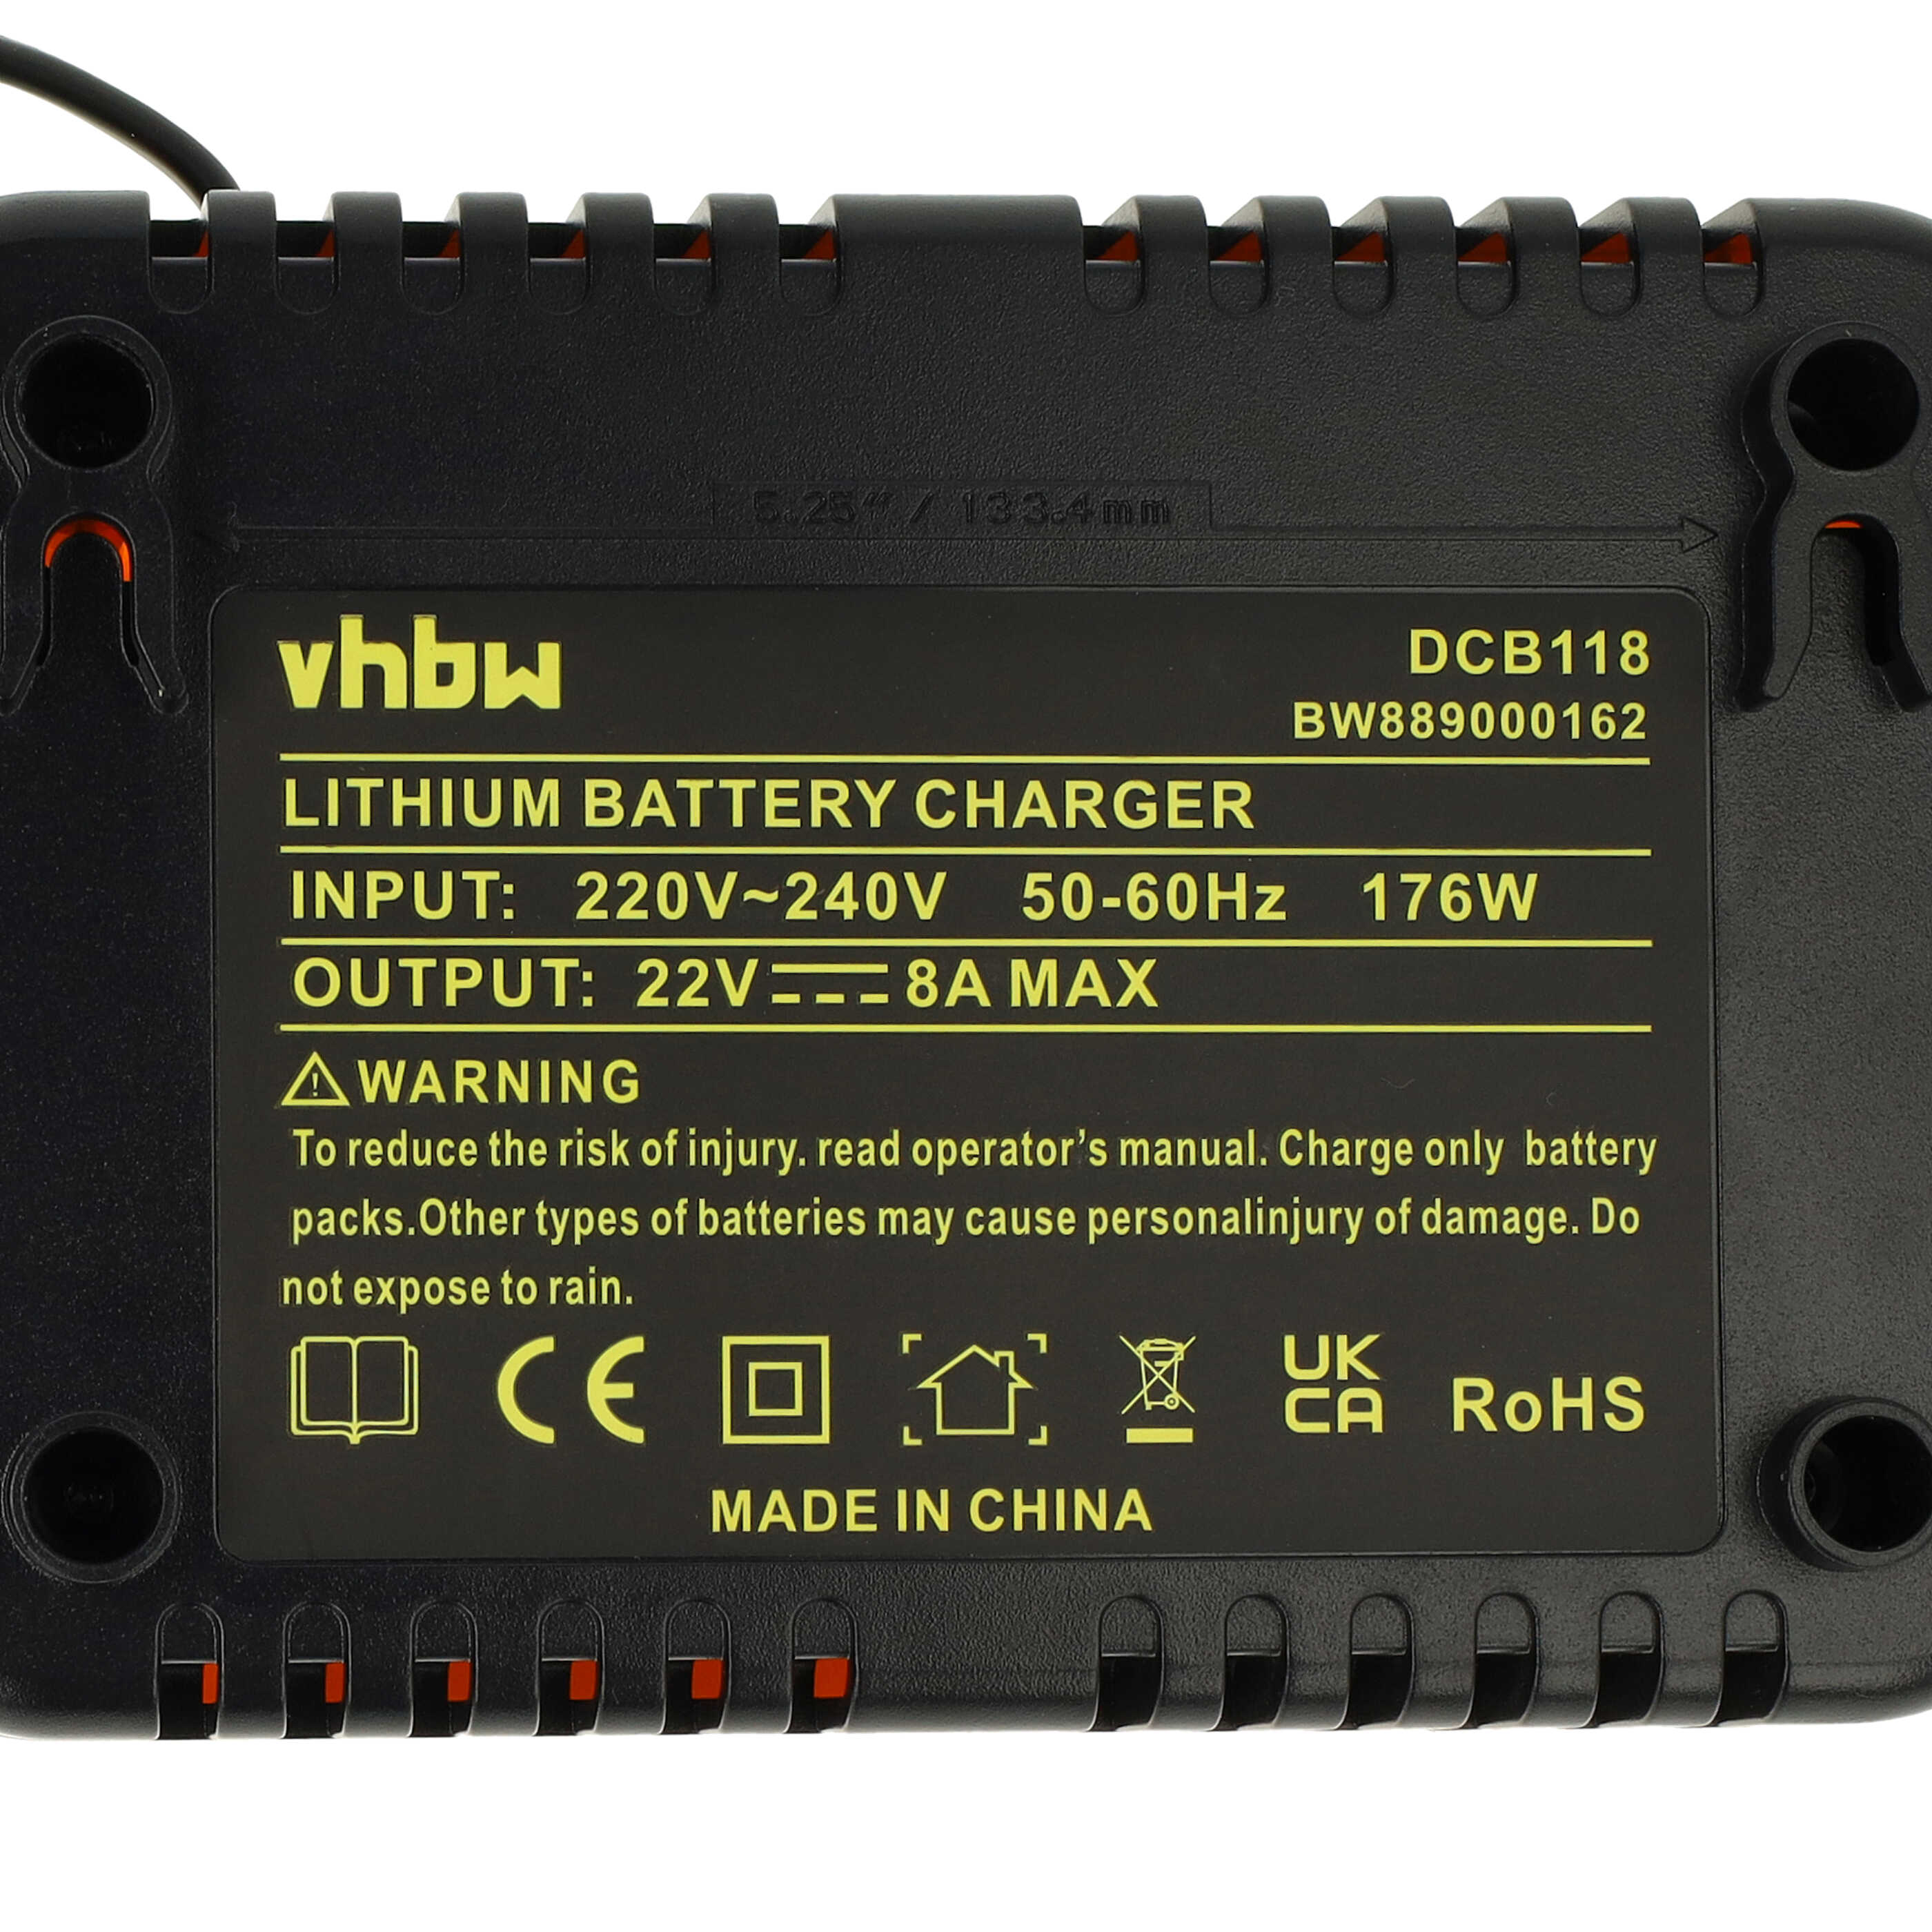 Chargeur rapide remplace Dewalt DCB118 pour batterie d'outil électrique Dewalt